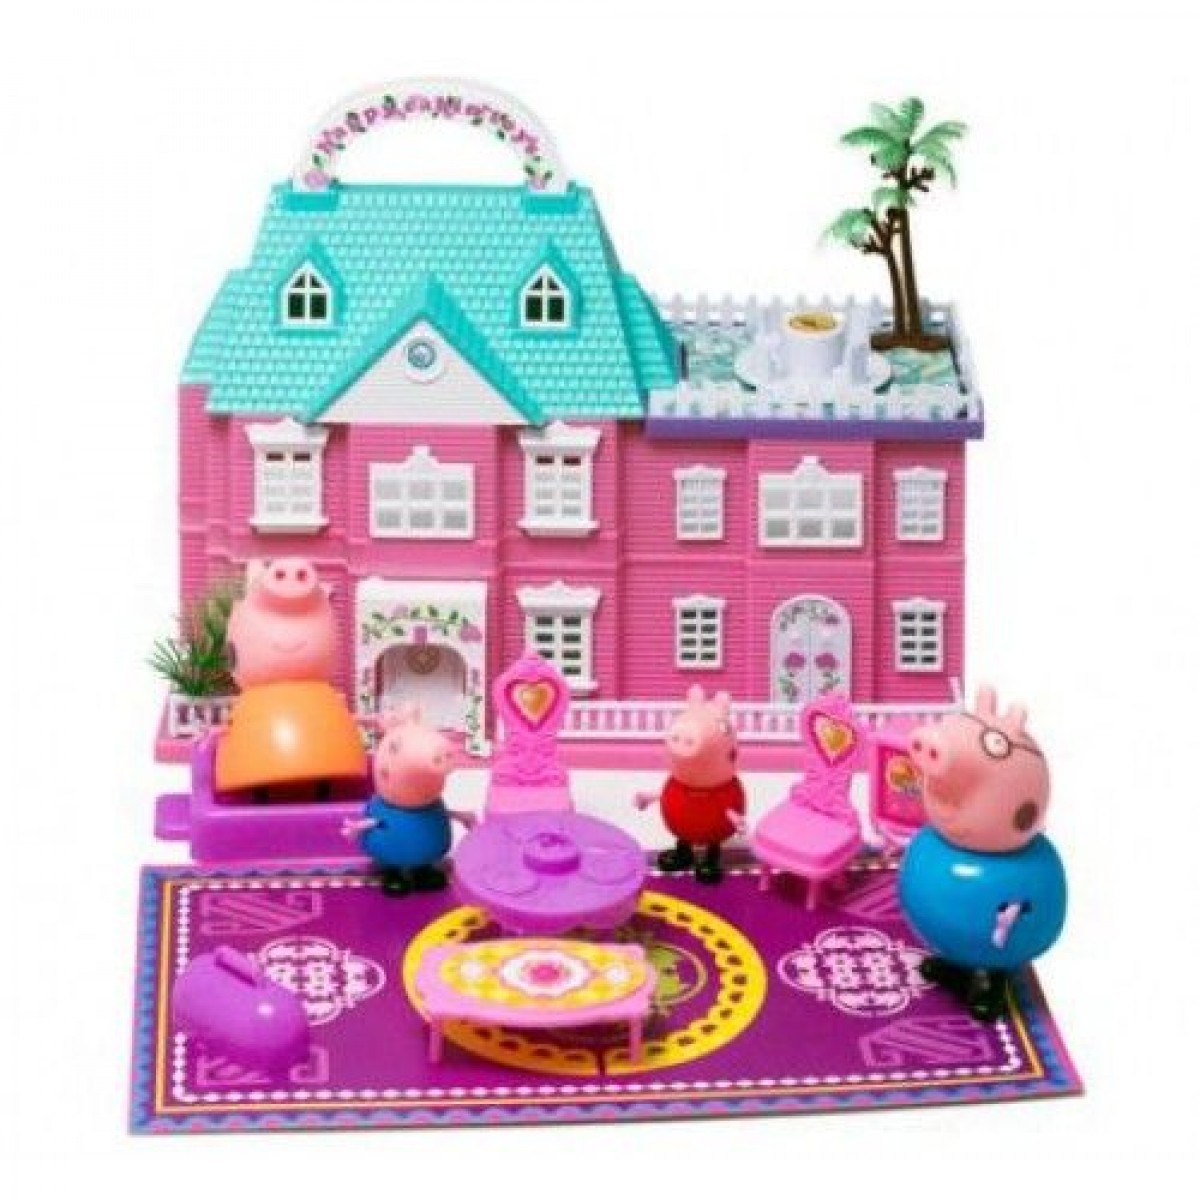 Дом свинки пеппы и ее семьи. Игровой набор домик Пеппы 15553. Свинка Пеппа дом. Дом свинки Пэппы с её семьёй. Свинка Пеппа домик и семья.